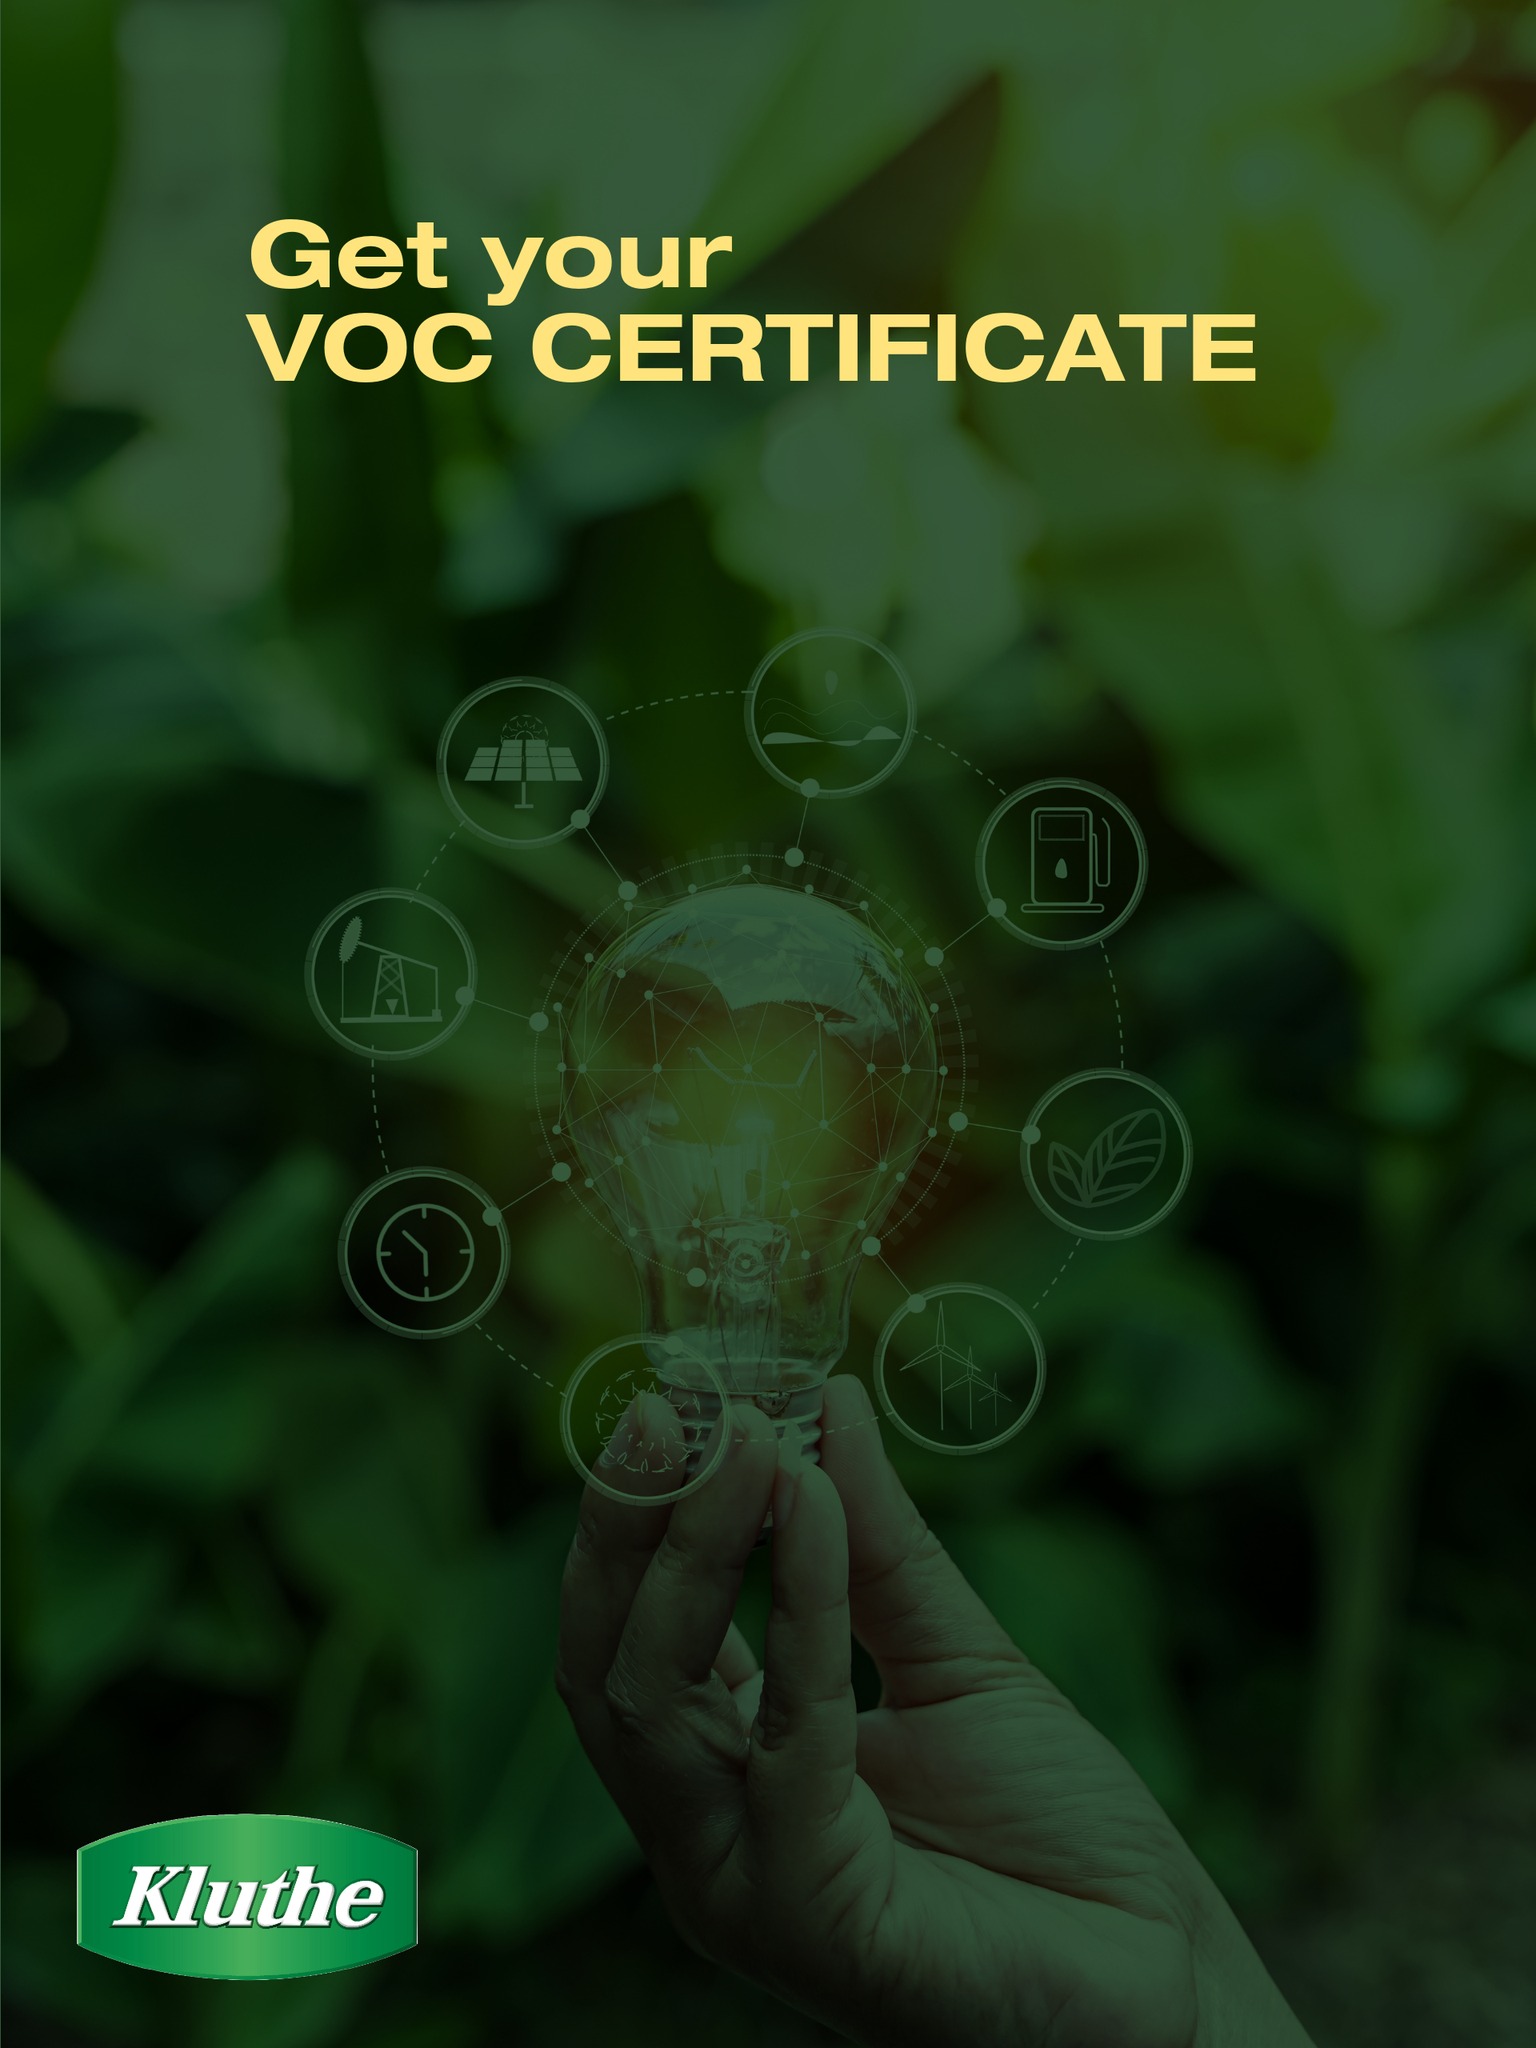 VOC certifikát Kluthe - snižujte bilanci organických rozpouštědel